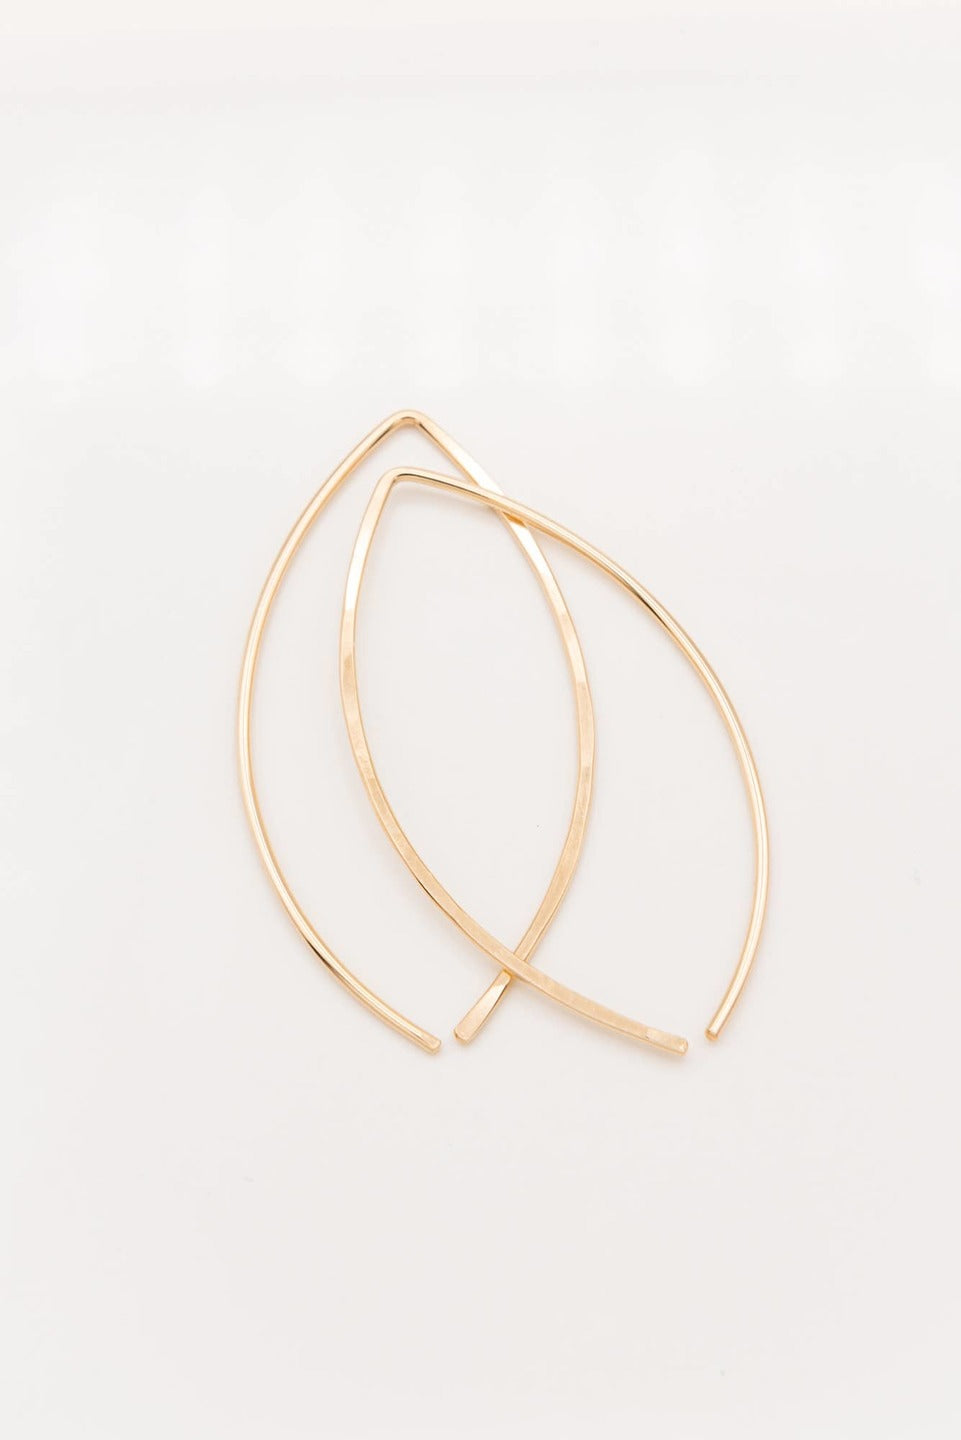 Petal Earrings | Gold Filled